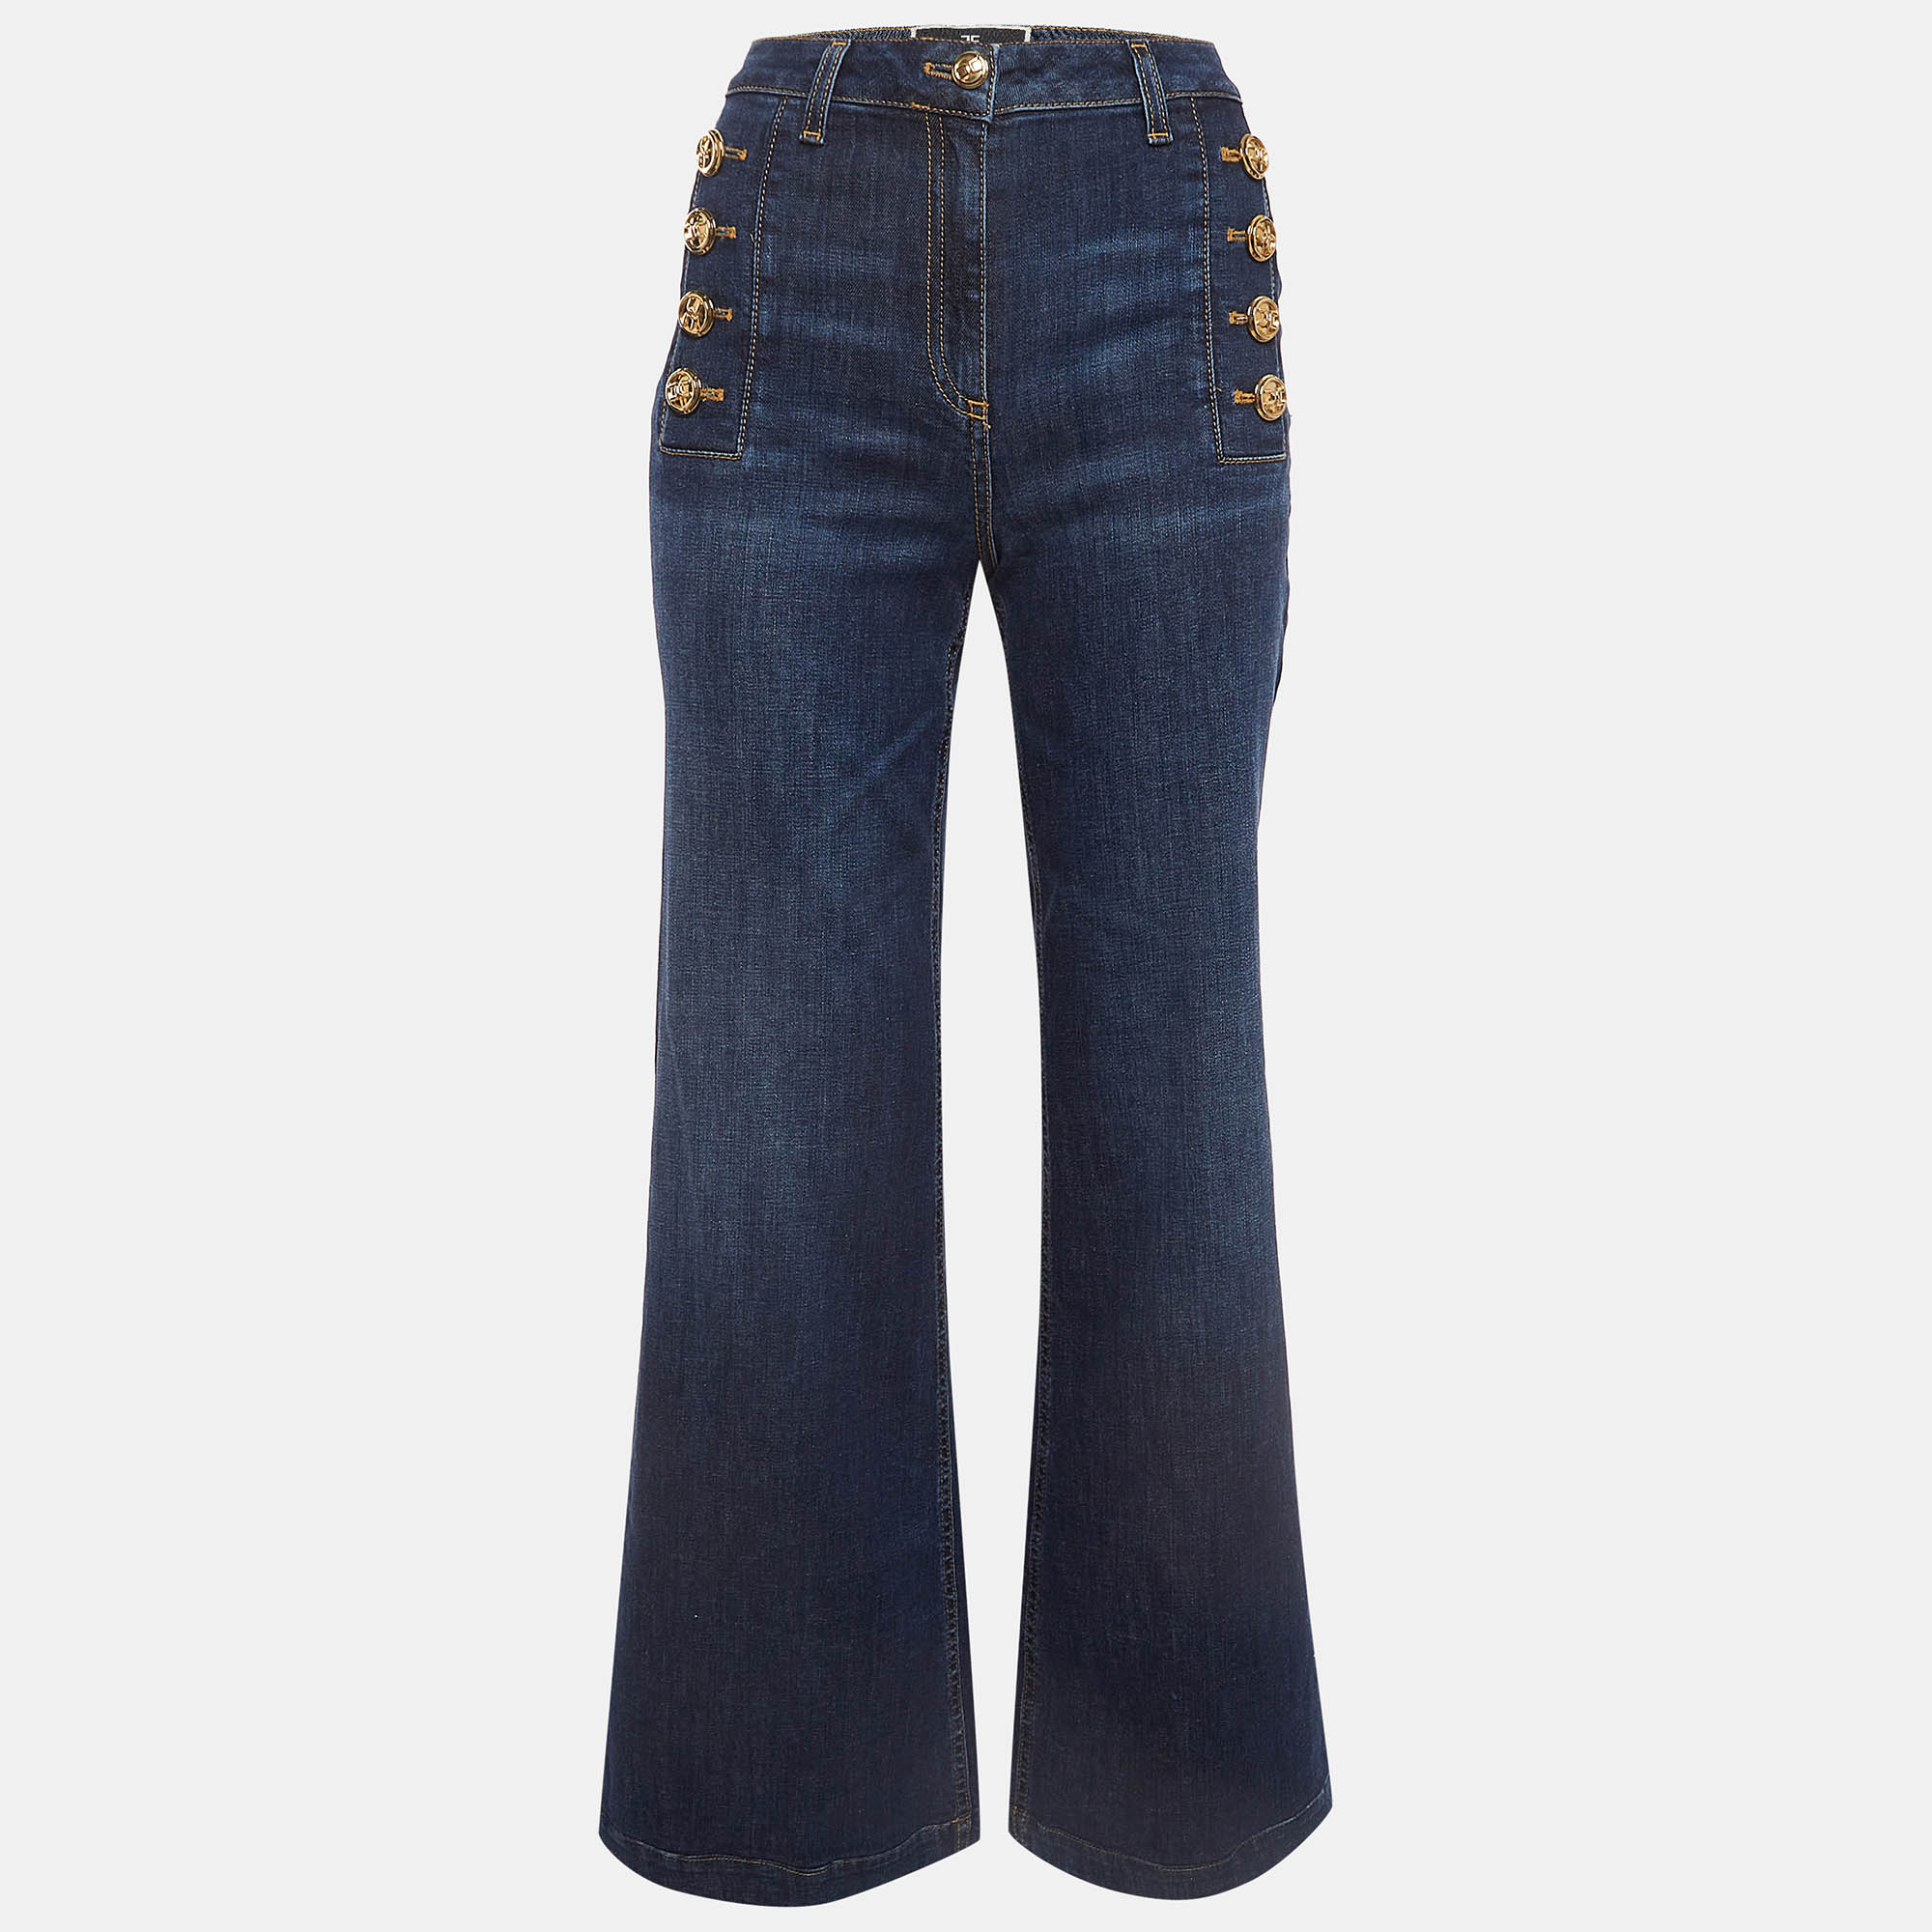 

Elisabetta Franchi Blue Denim Button Detail Flared Jeans S Waist 26"